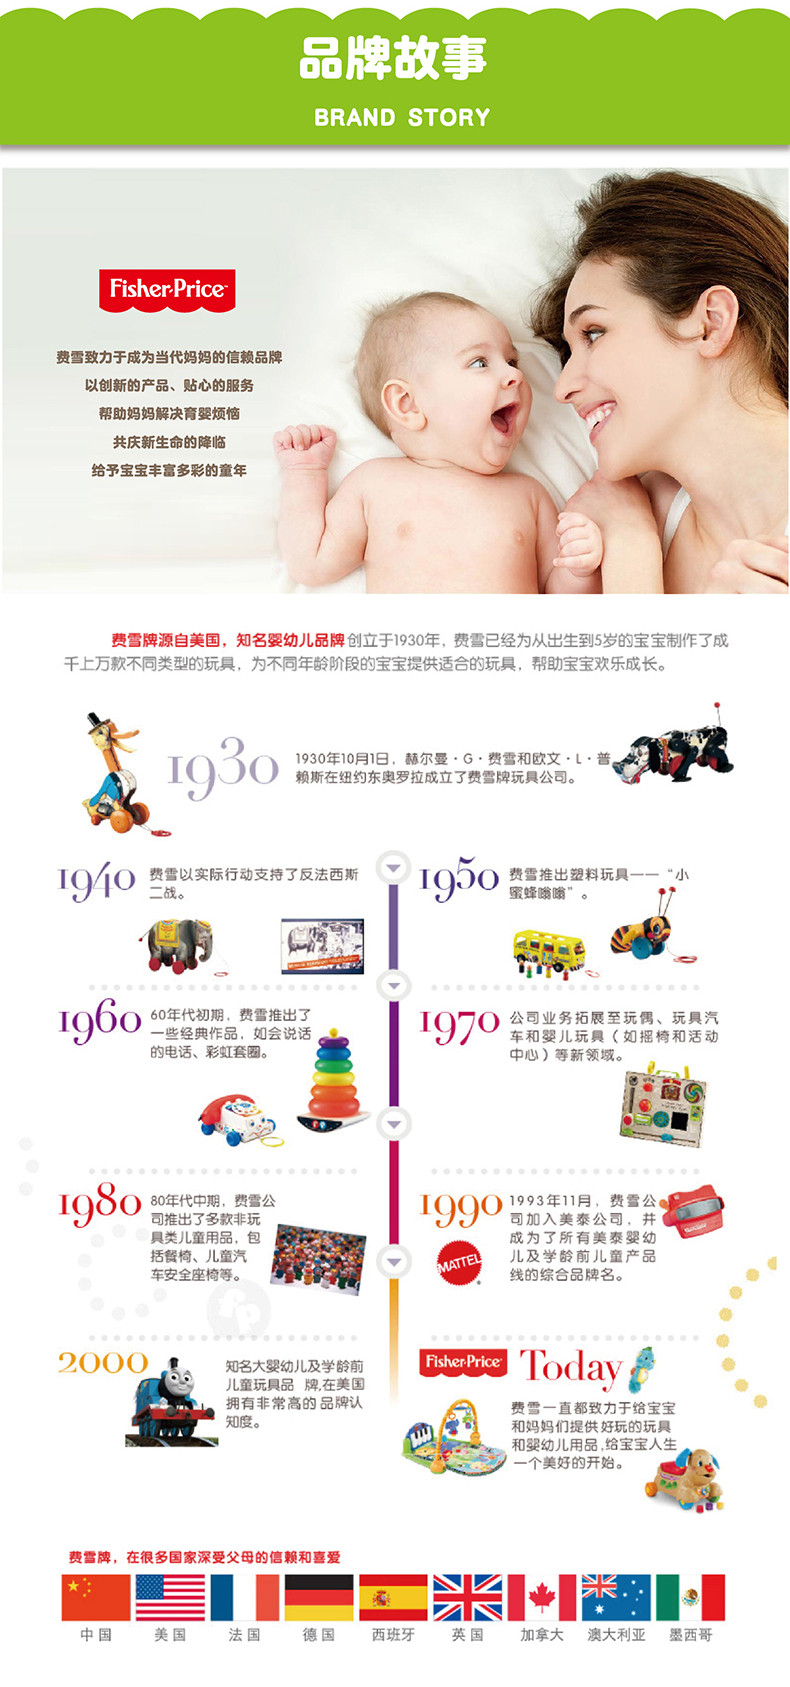 费雪(Fisher Price) 0-6月婴儿玩具球锻炼宝宝手部发育新生儿训练球套装